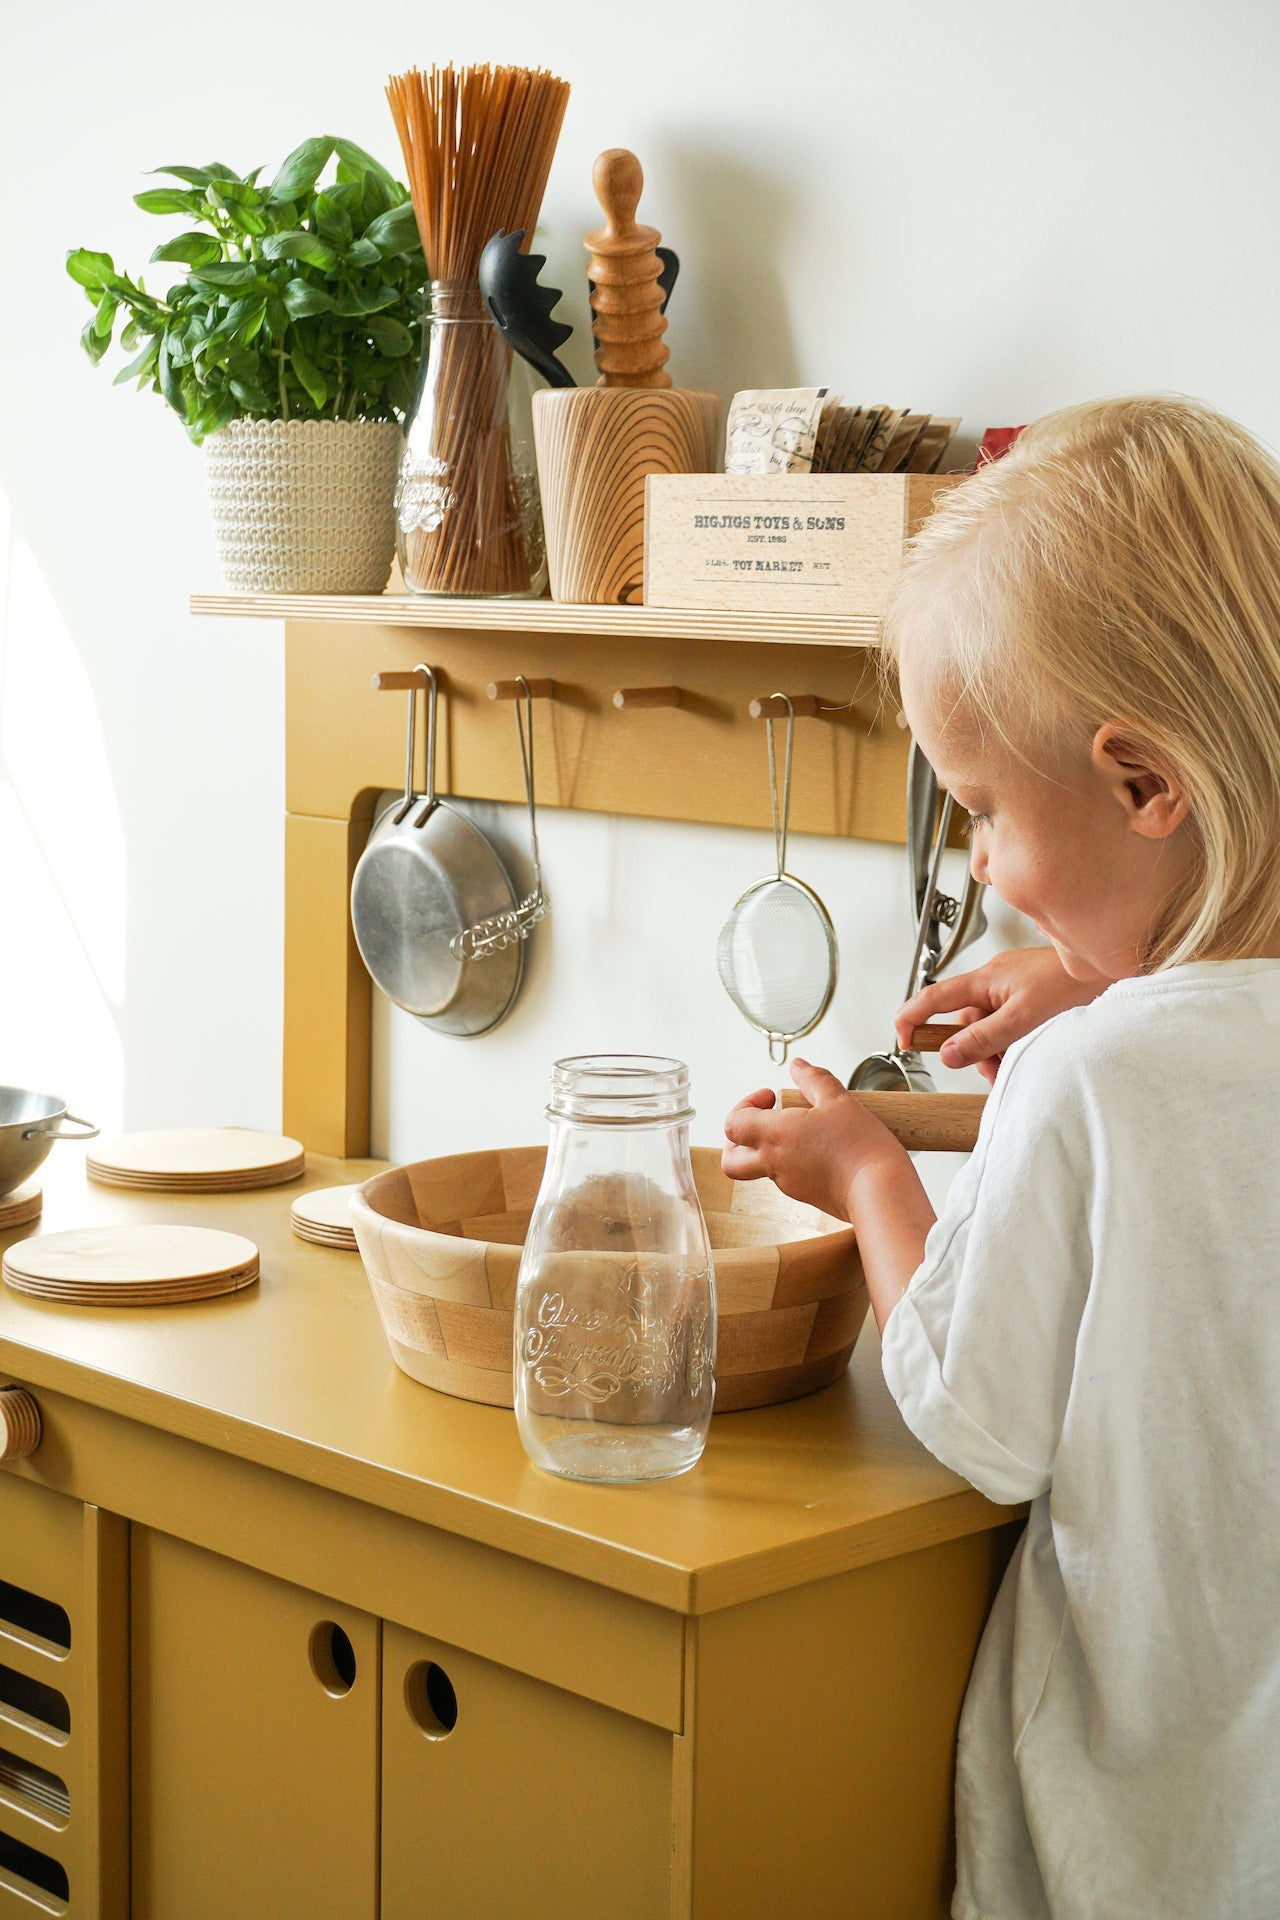 Midmini Mustard holz spiel Kitchen - Kinderzimmermöbel & Baby Spielzeugaktivitäten für den ultimativen Spielspaß